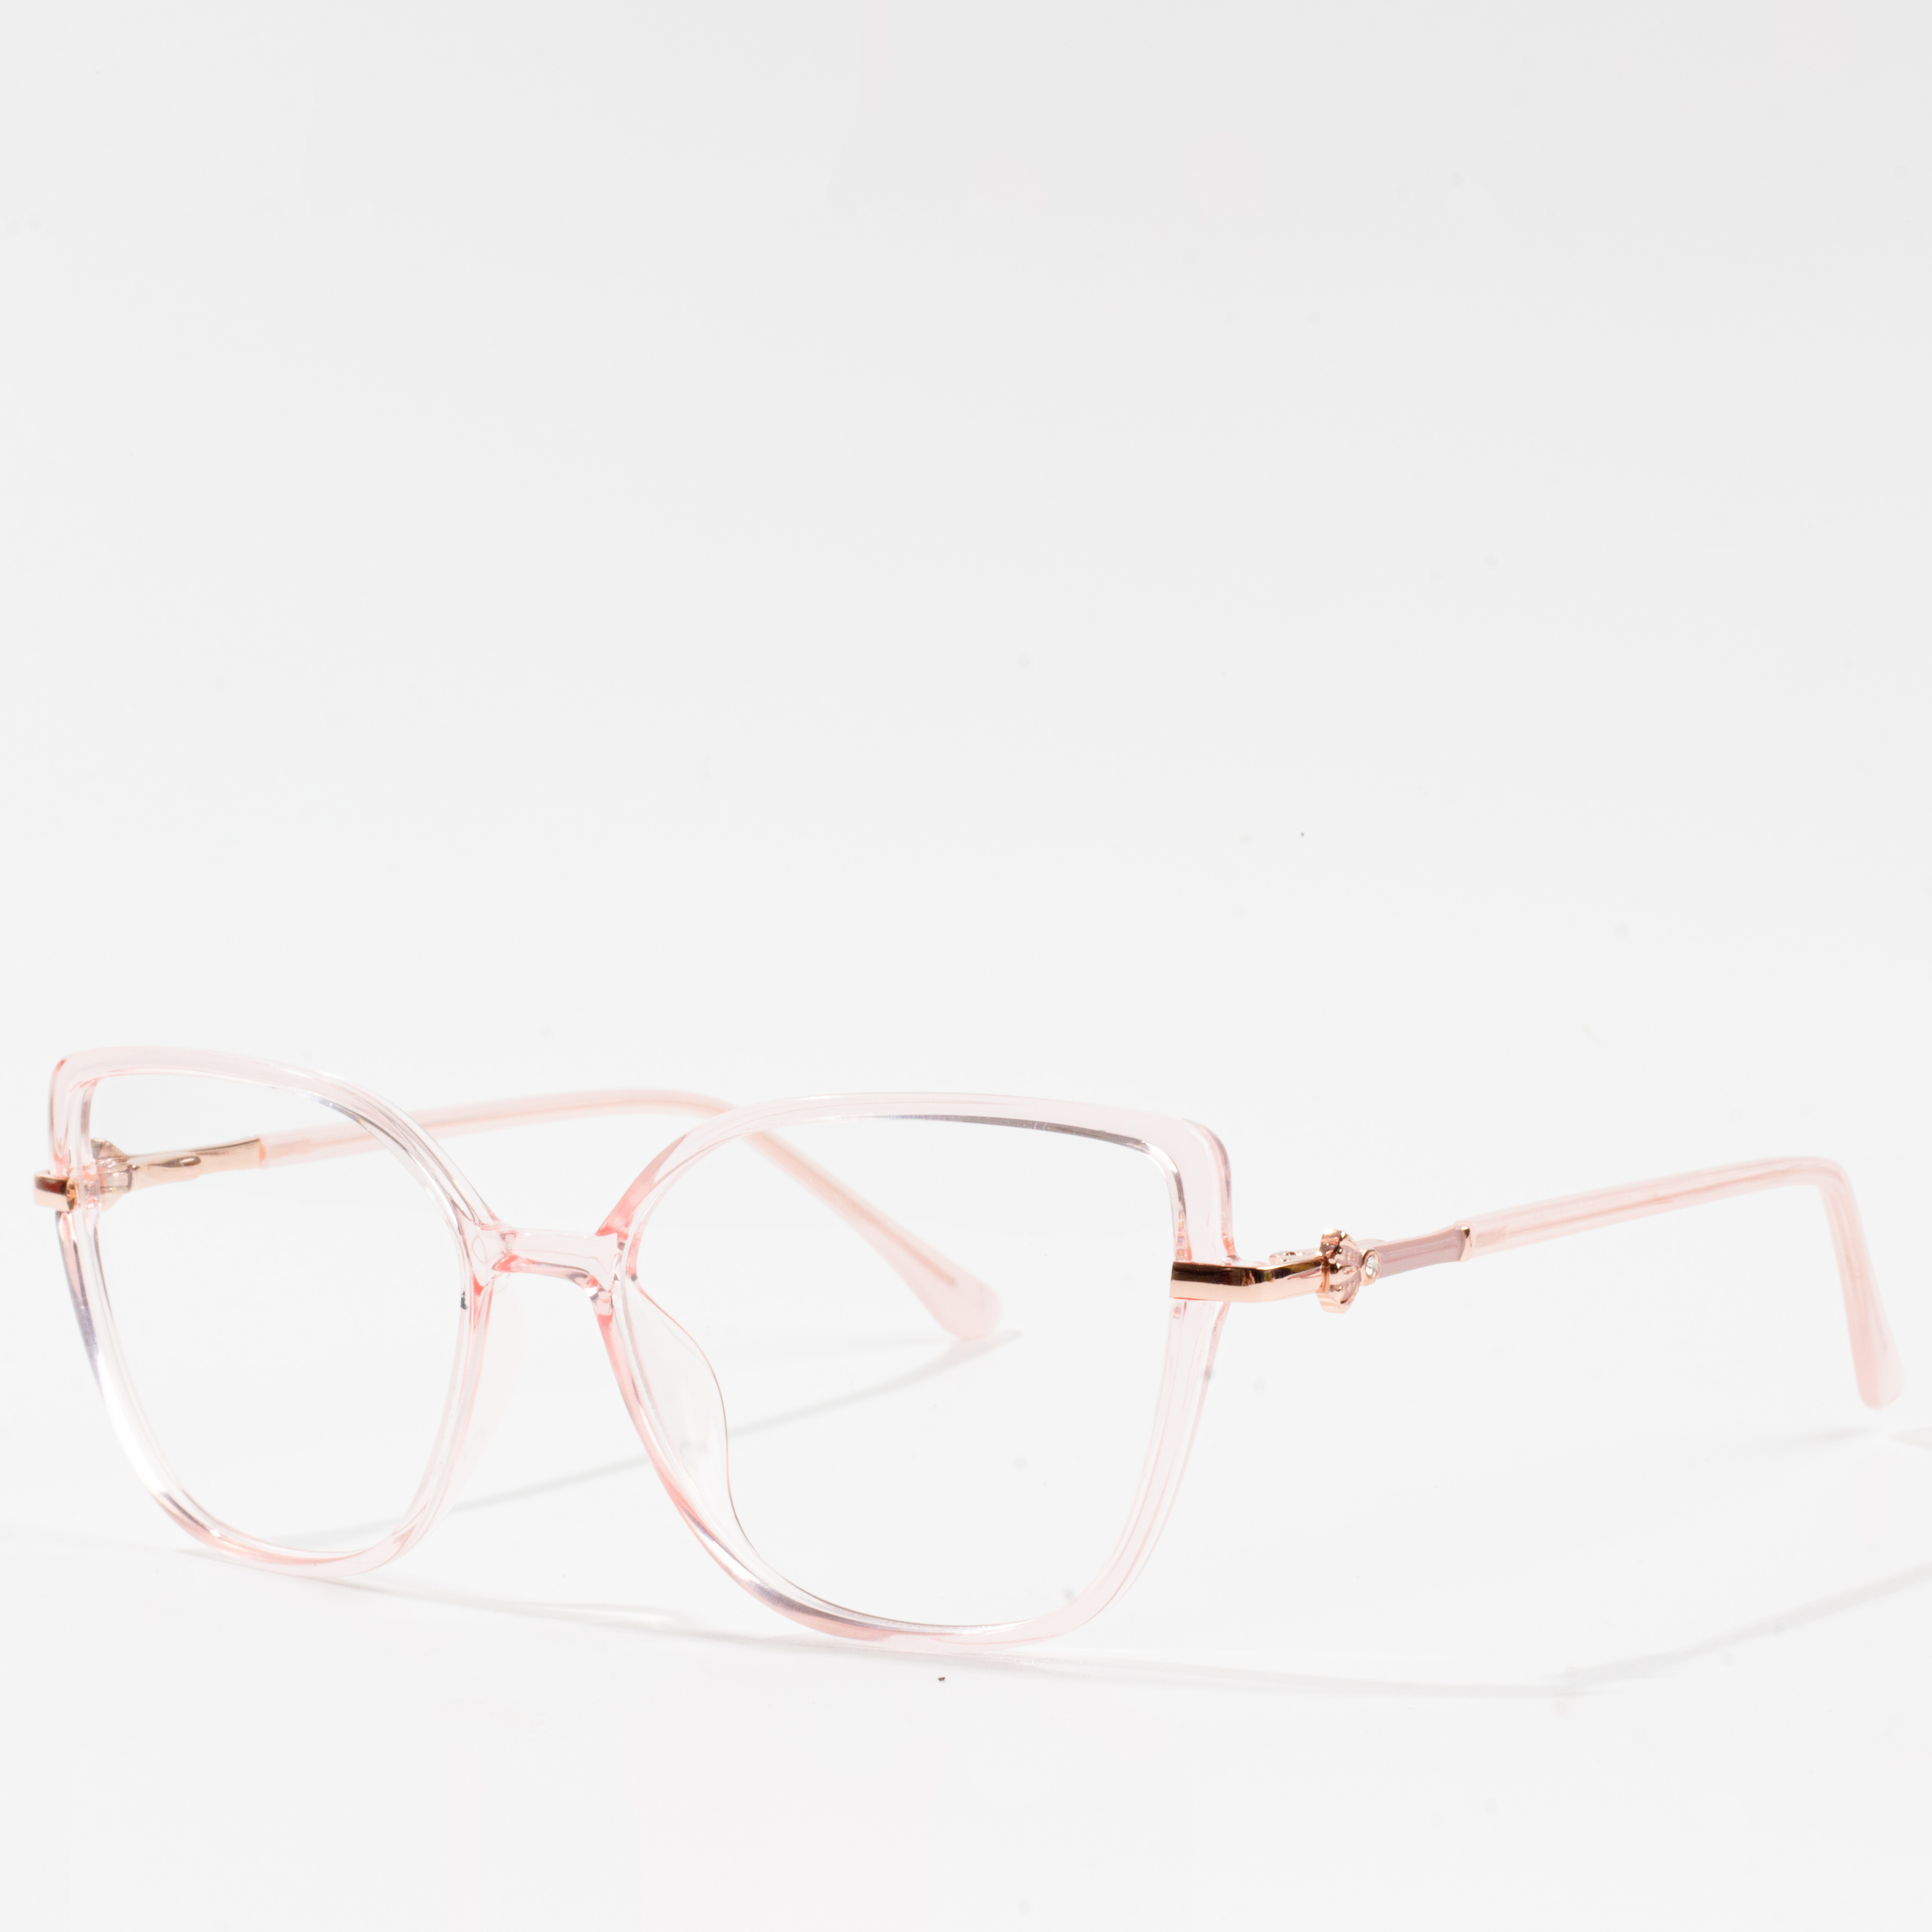 moderne brille frames